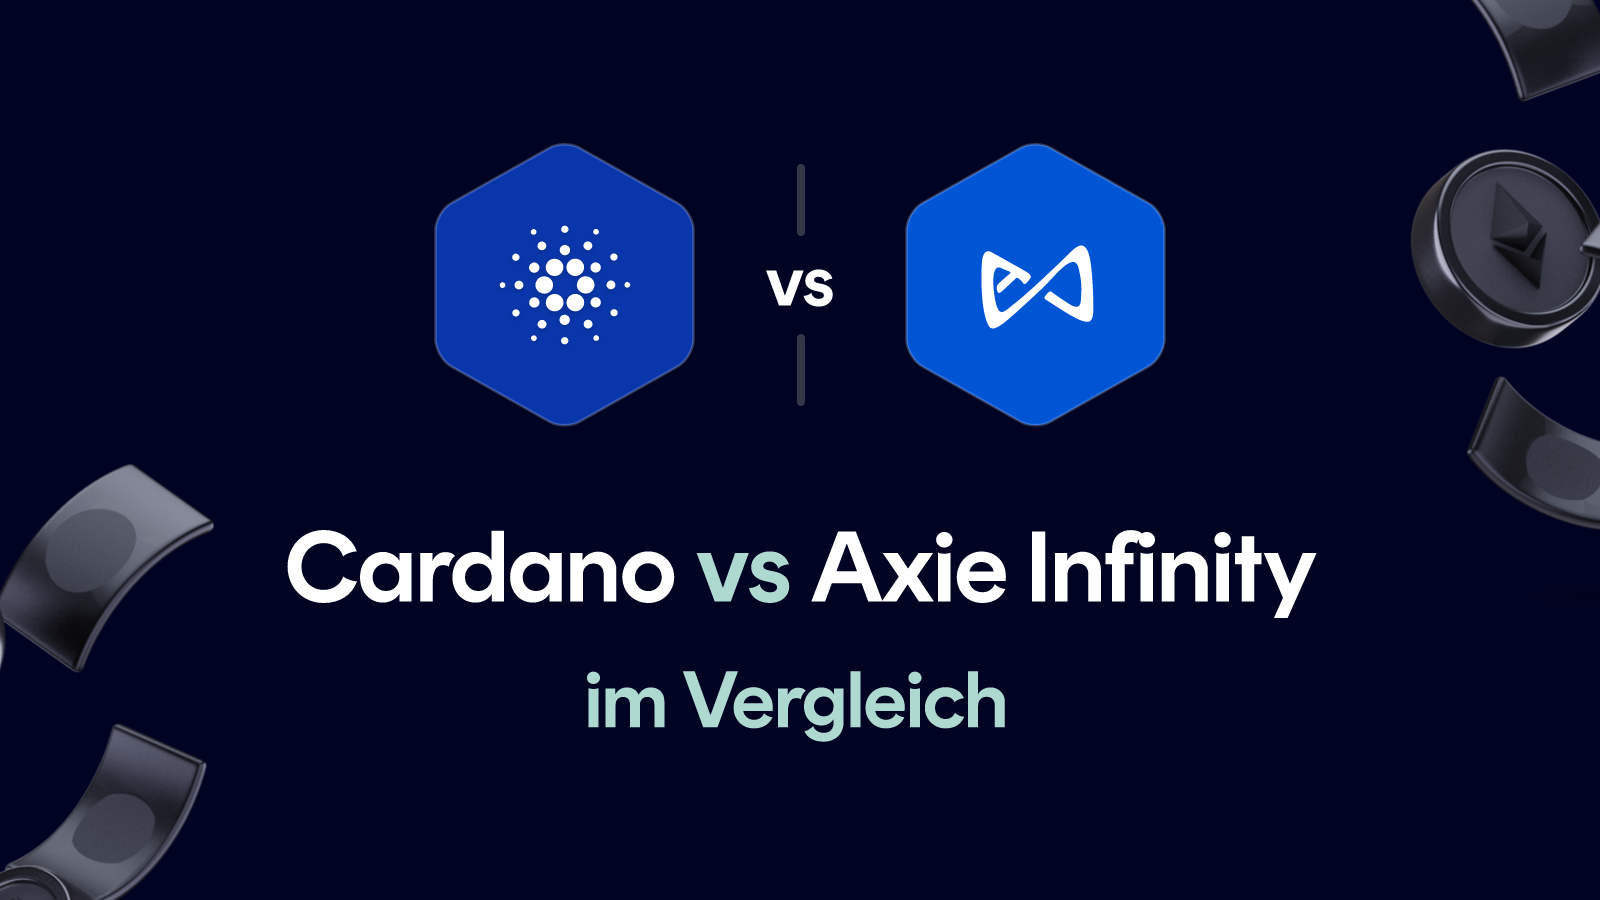 Cardano vs Axie Infinity